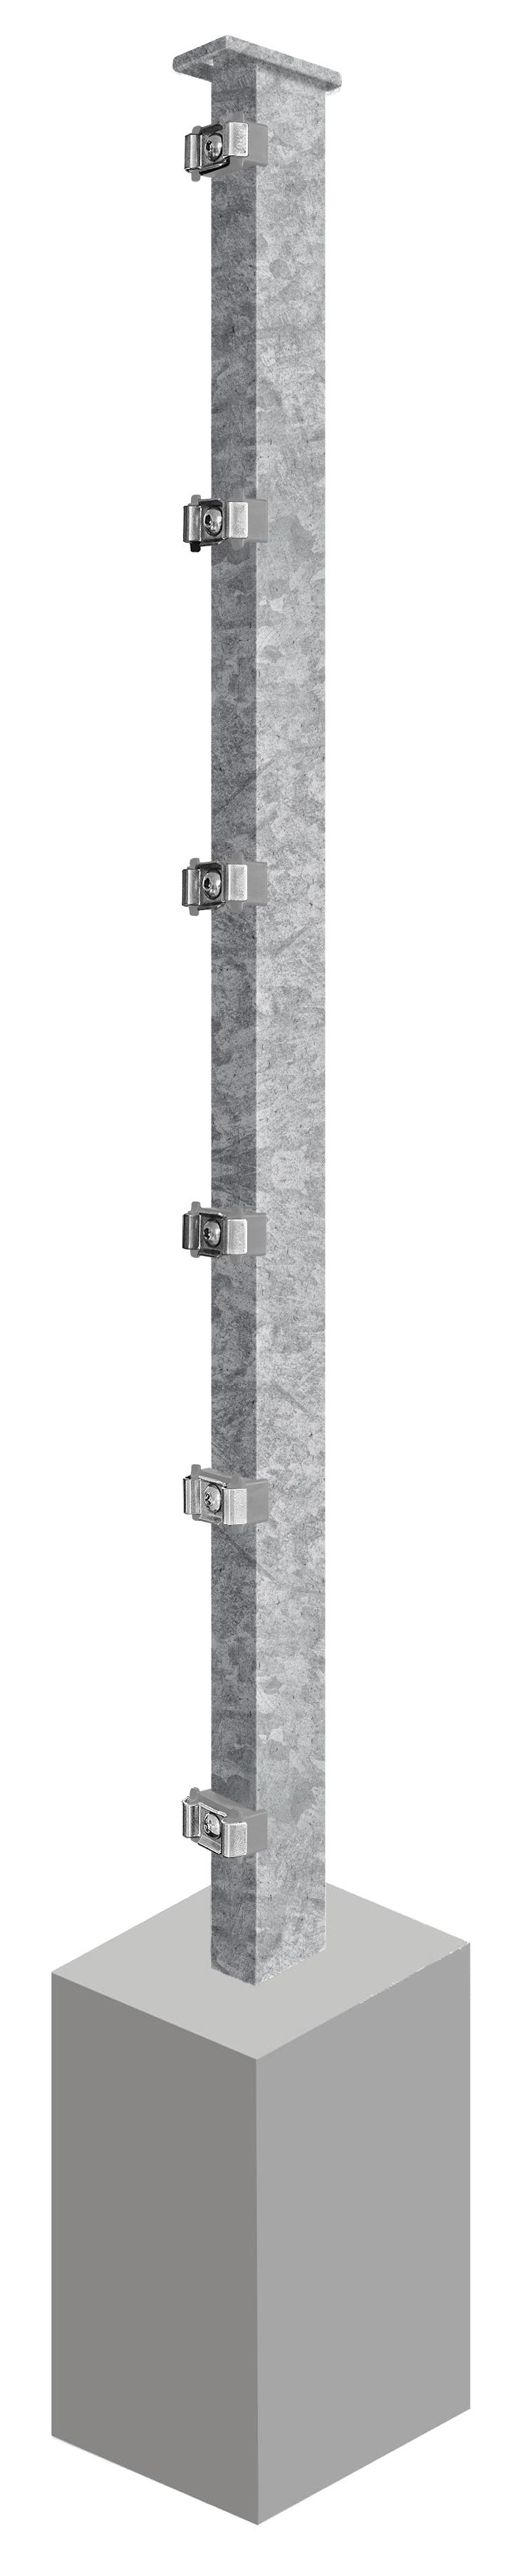 Pfosten System AC-Typ PSLF, für Zaunhöhe 0.830 mm